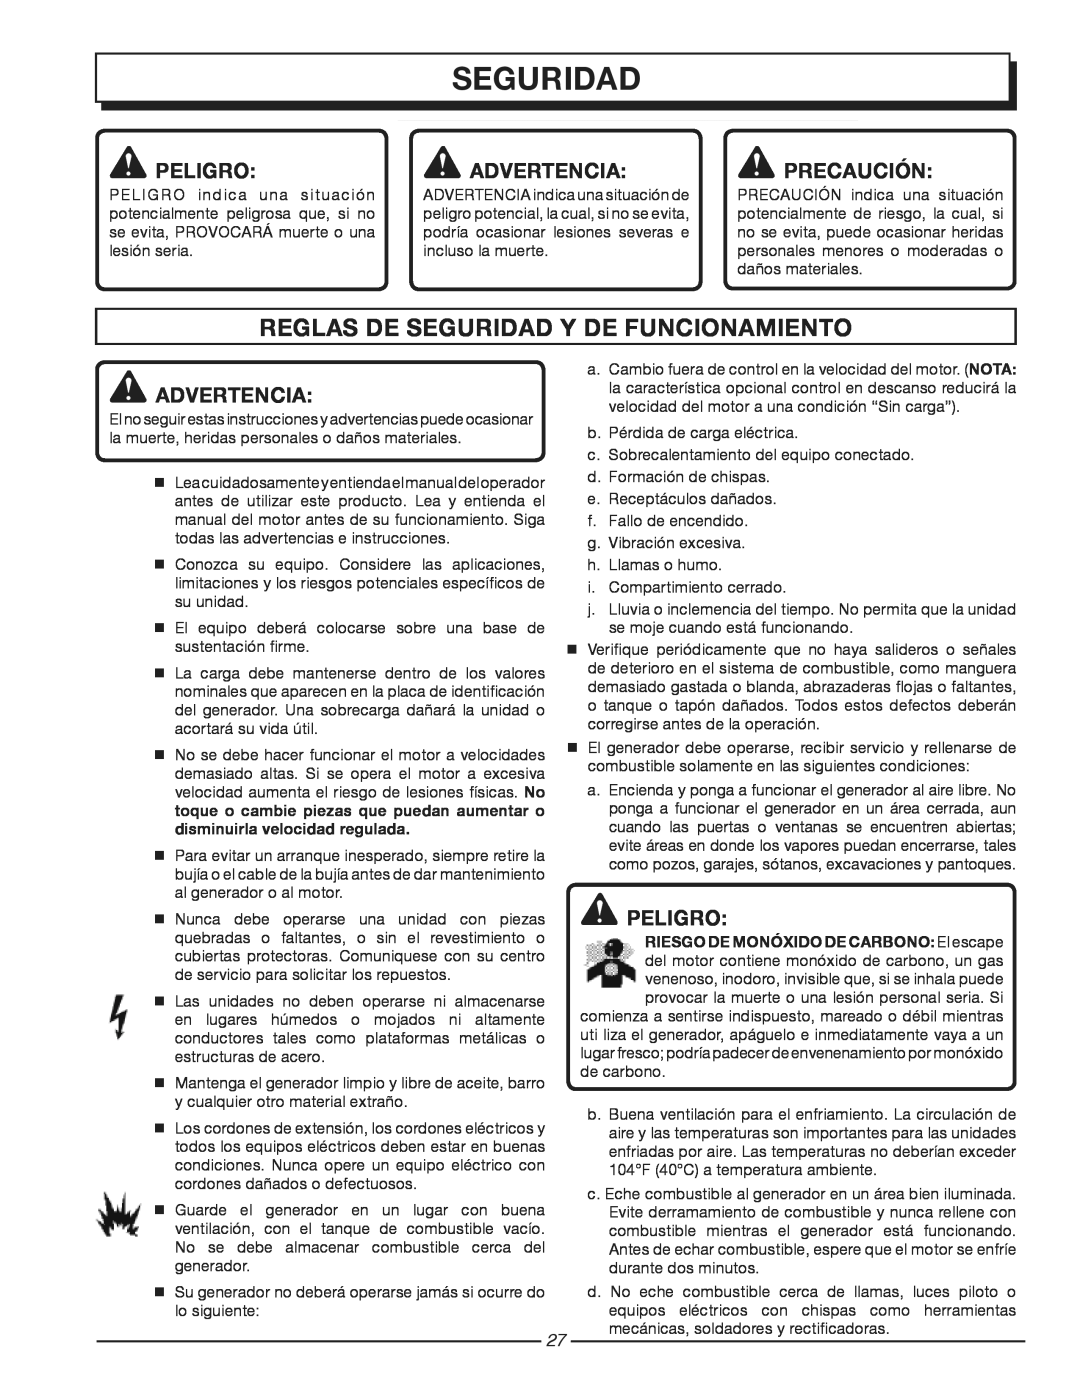 Homelite HG3510 manuel dutilisation Reglas De Seguridad Y De Funcionamiento, Peligro, Advertencia, Precaución 